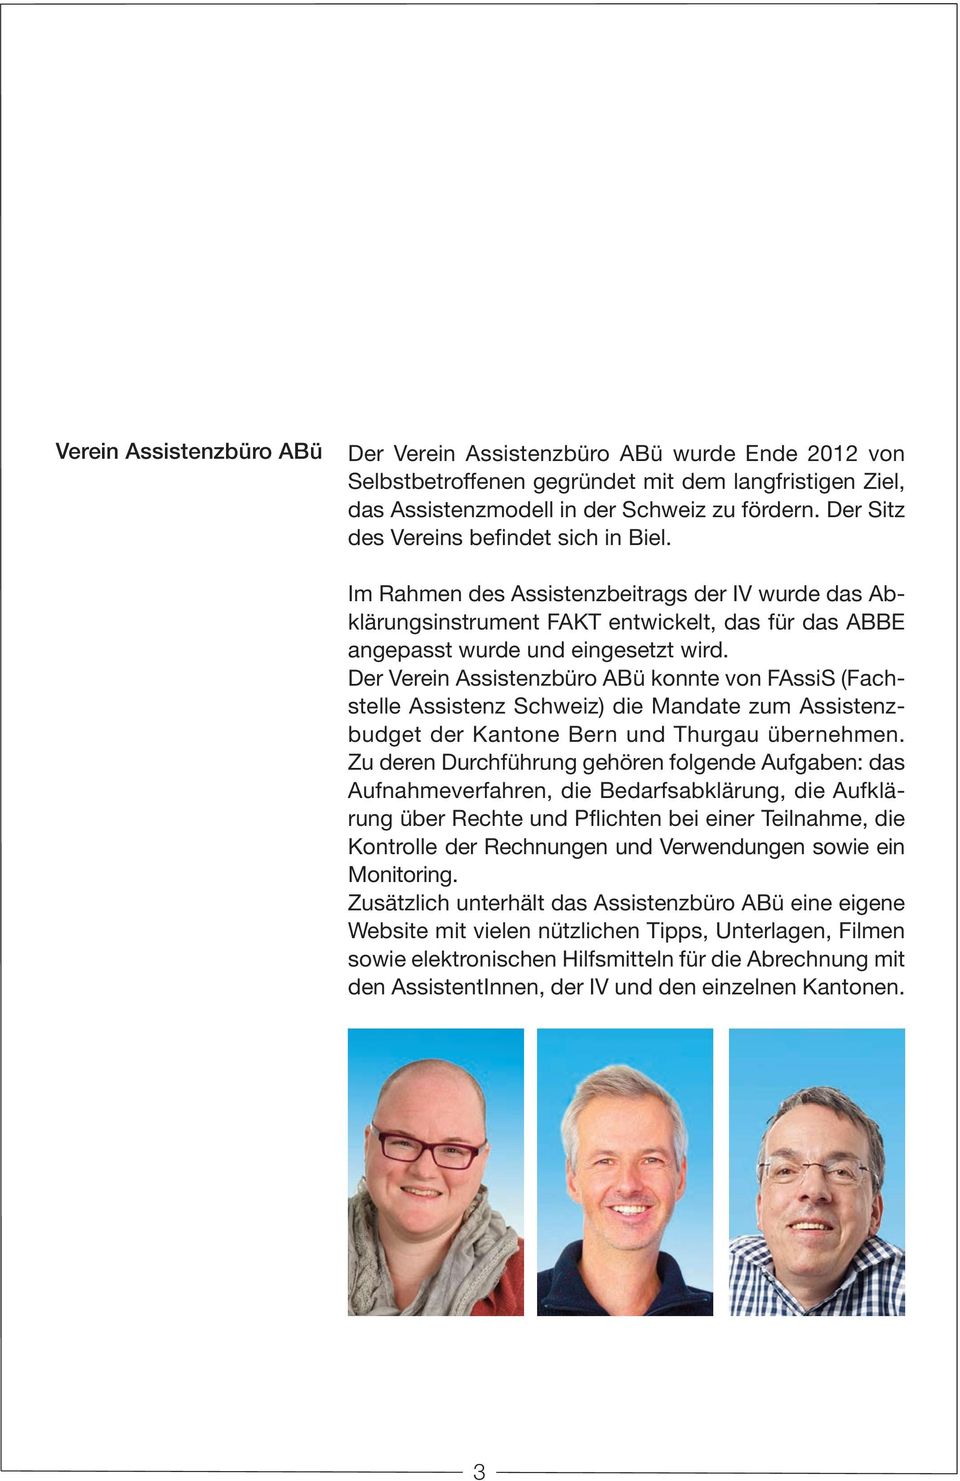 Der Verein Assistenzbüro ABü konnte von FAssiS (Fachstelle Assistenz Schweiz) die Mandate zum Assistenzbudget der Kantone Bern und Thurgau übernehmen.